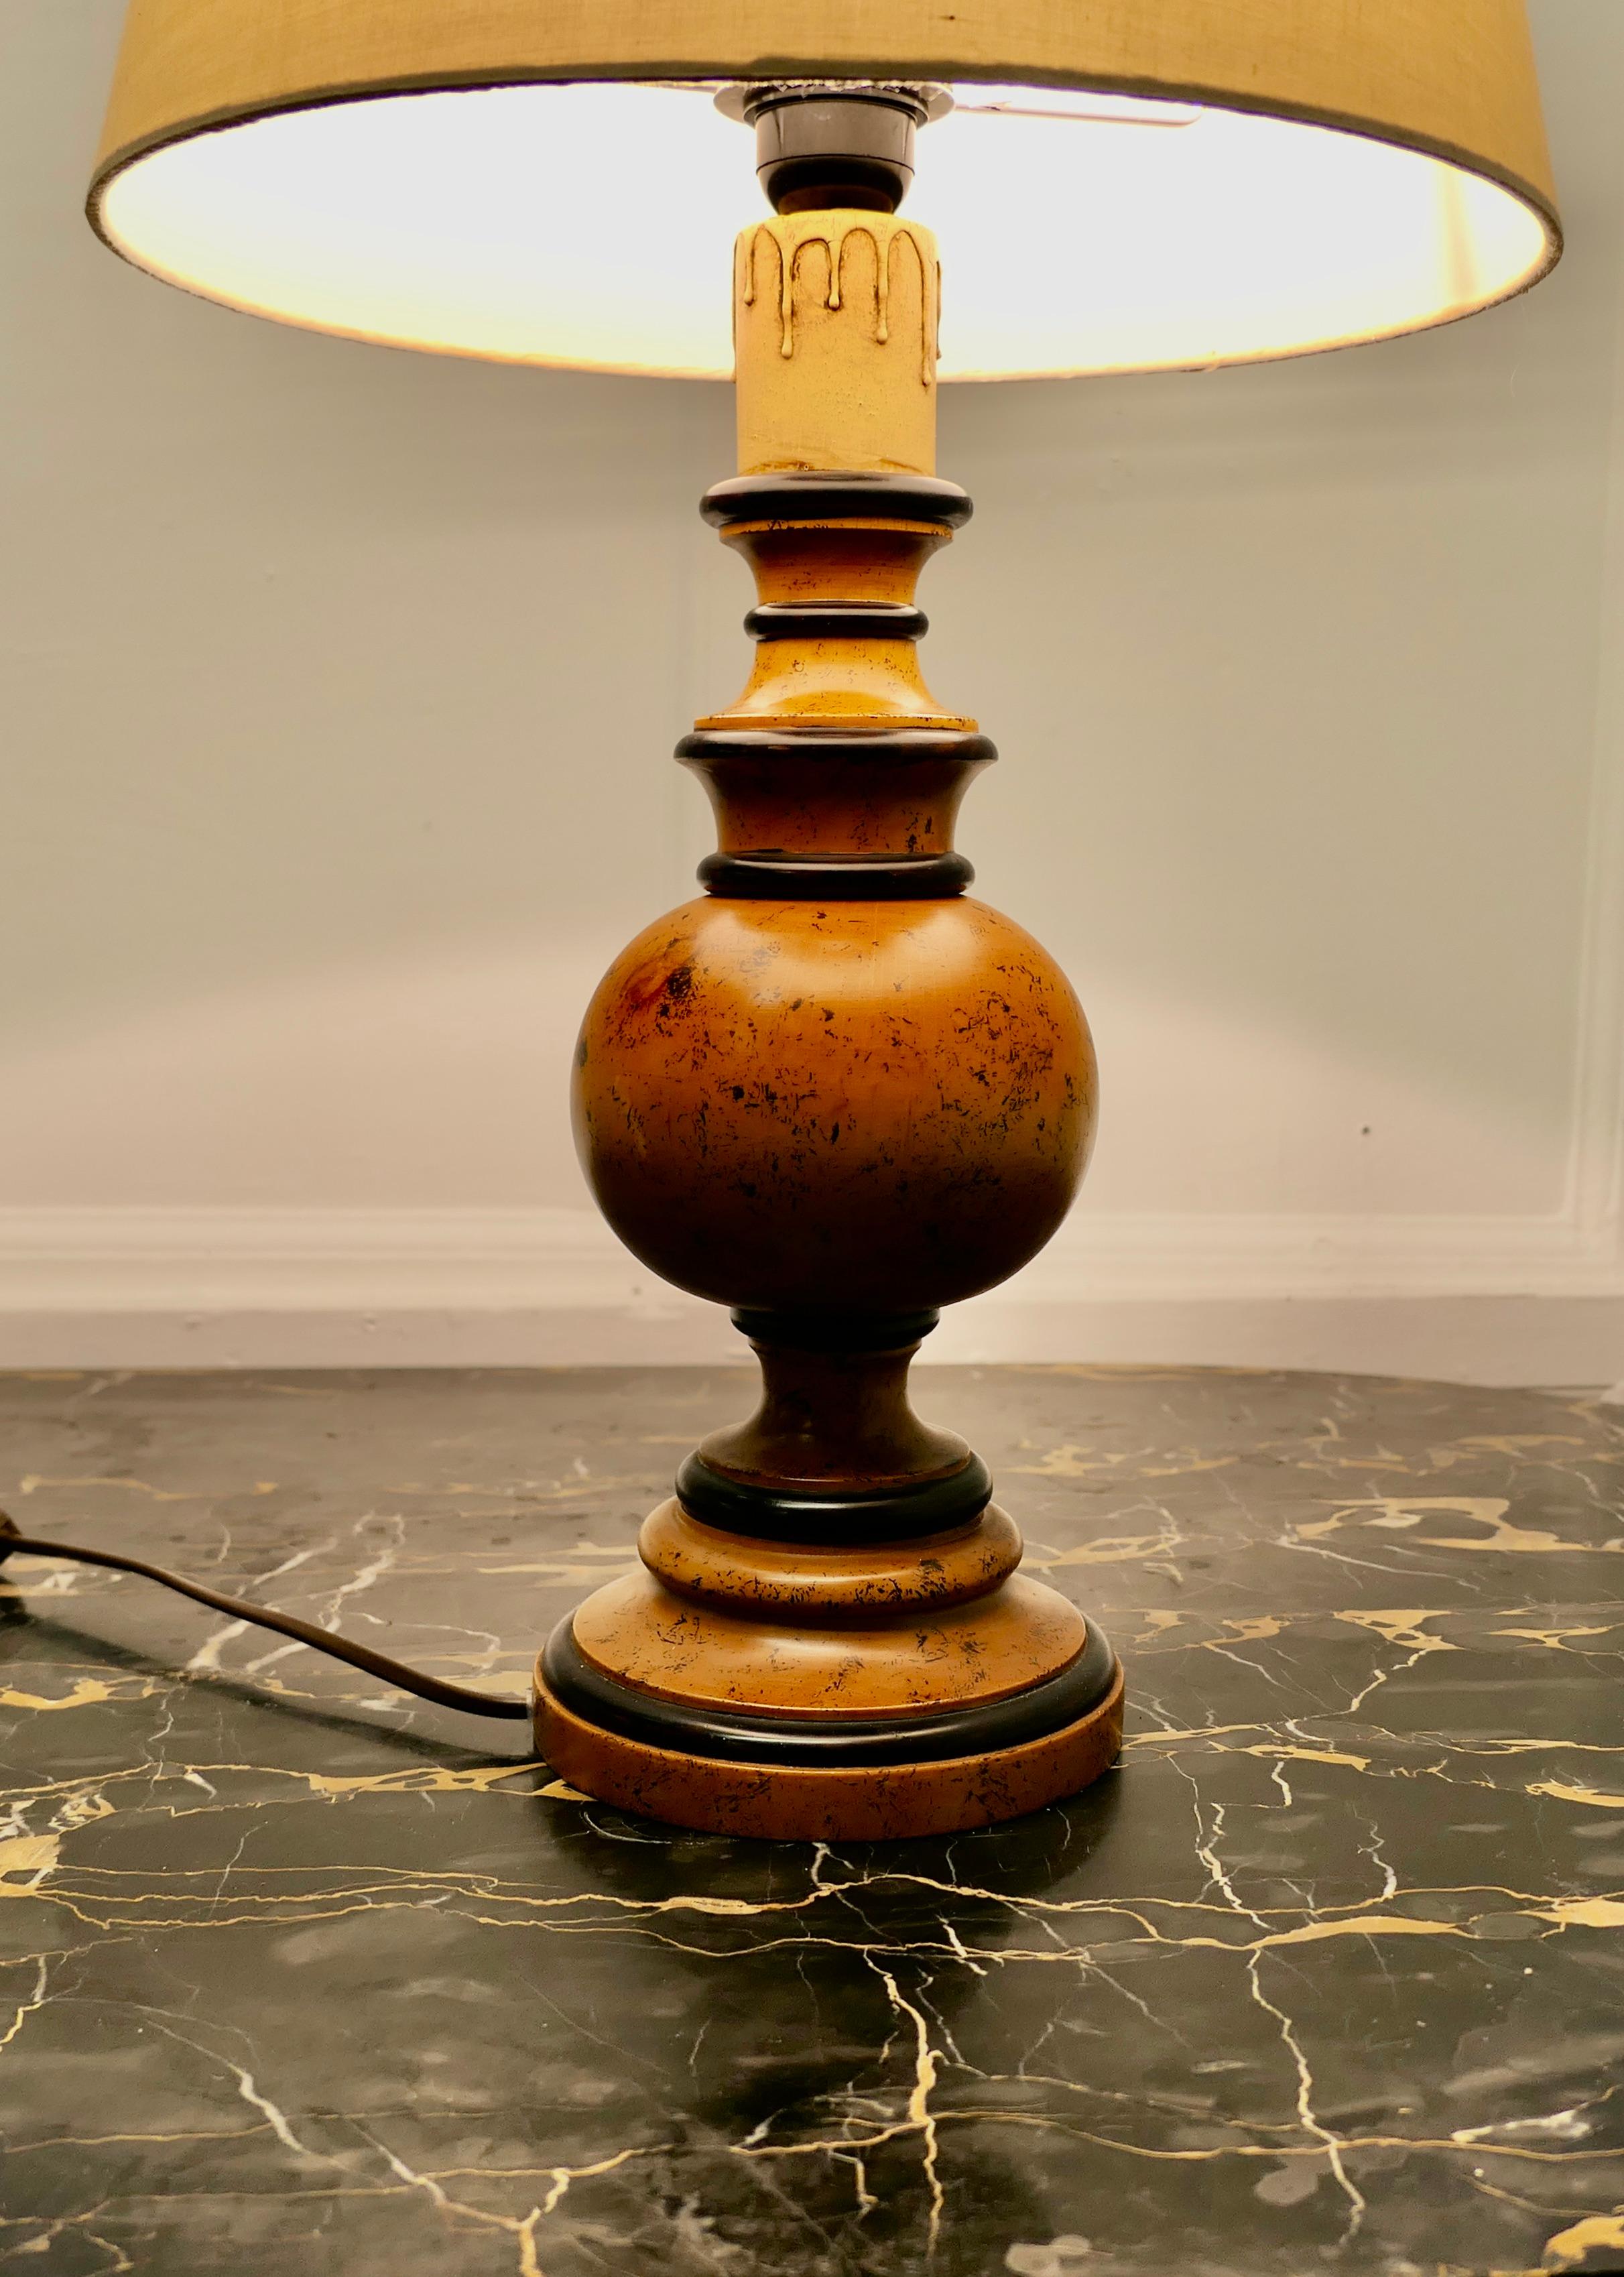 Grande lampe de table en bois tourné à bulbe.

Il s'agit d'une pièce volumineuse qui a été tournée en bois.
Il s'agit d'une pièce très attrayante en bon état pour son âge, je l'ai montré avec une ombre qui peut être inclus si nécessaire.
En bon